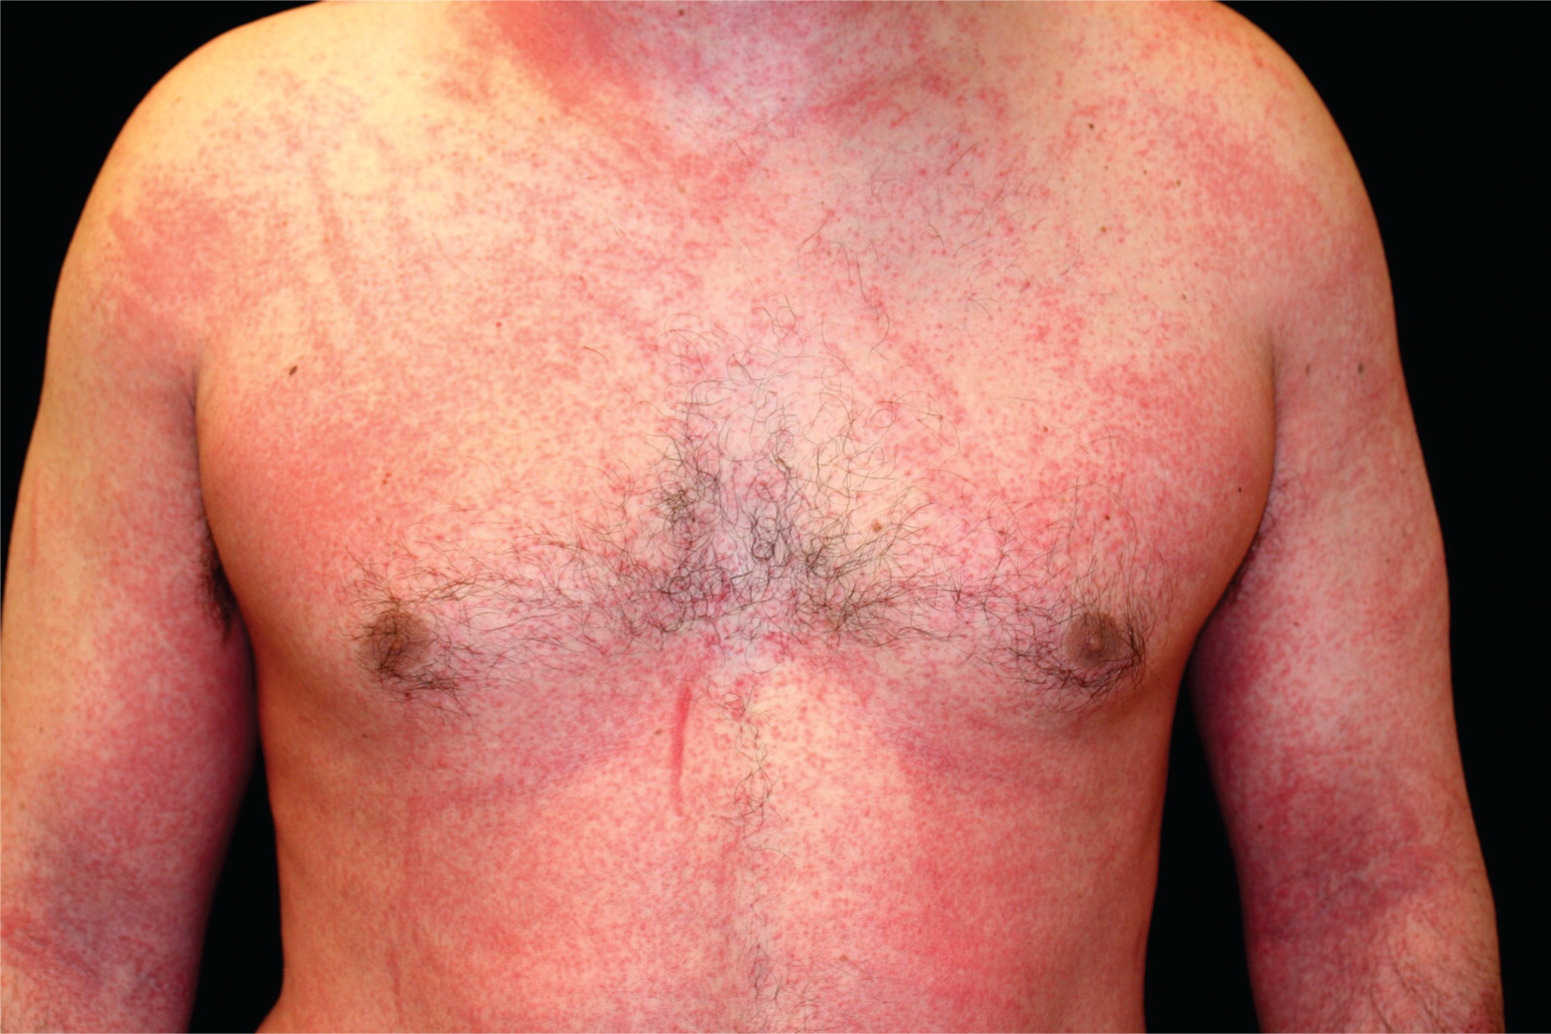 diffuse erythematous rash